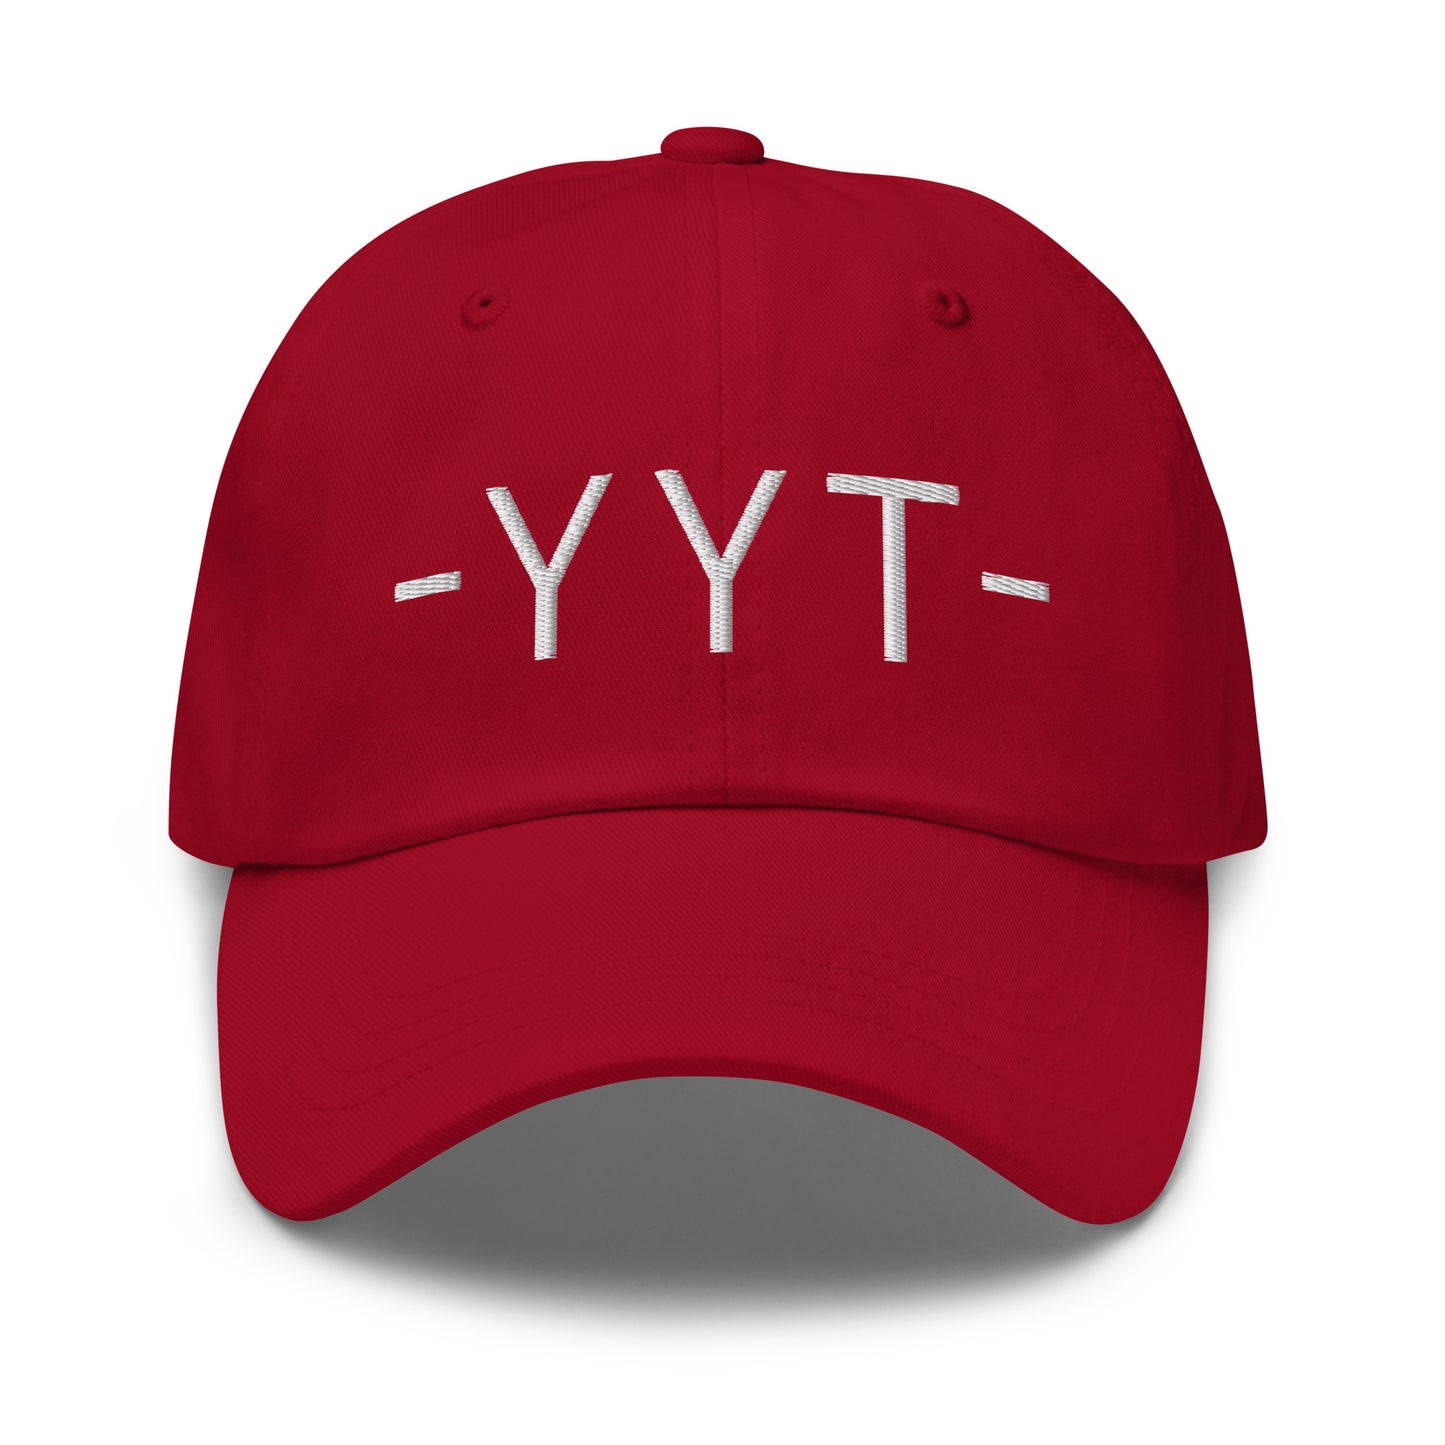 Souvenir Baseball Cap - White • YYT St. John's • YHM Designs - Image 16